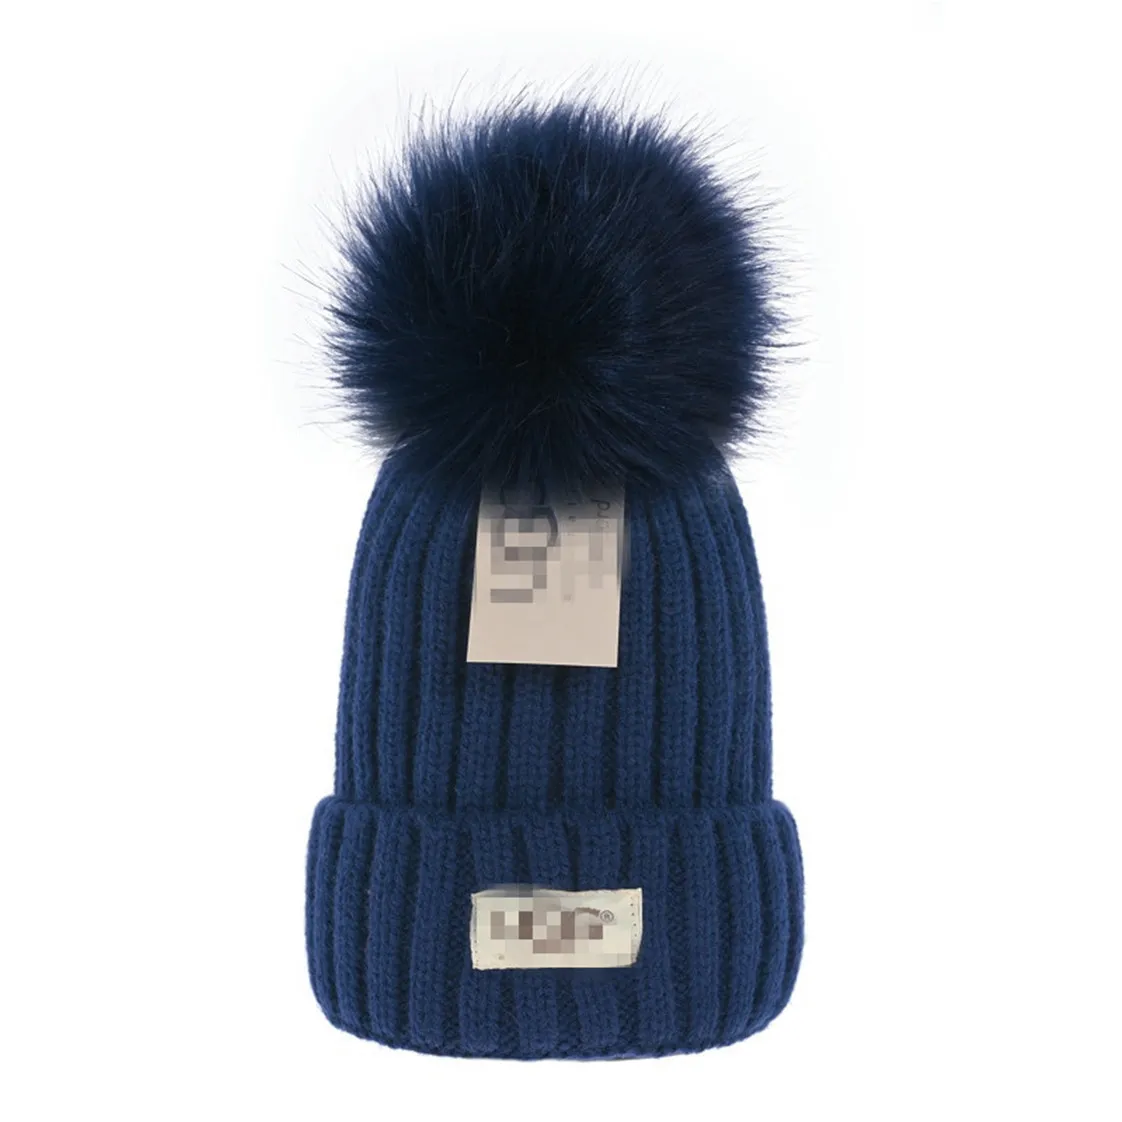 Nowy luksusowy projektant czapki unisex jesienne zimowe czapki dzianinowy kapelusz dla mężczyzn i kobiet czapki